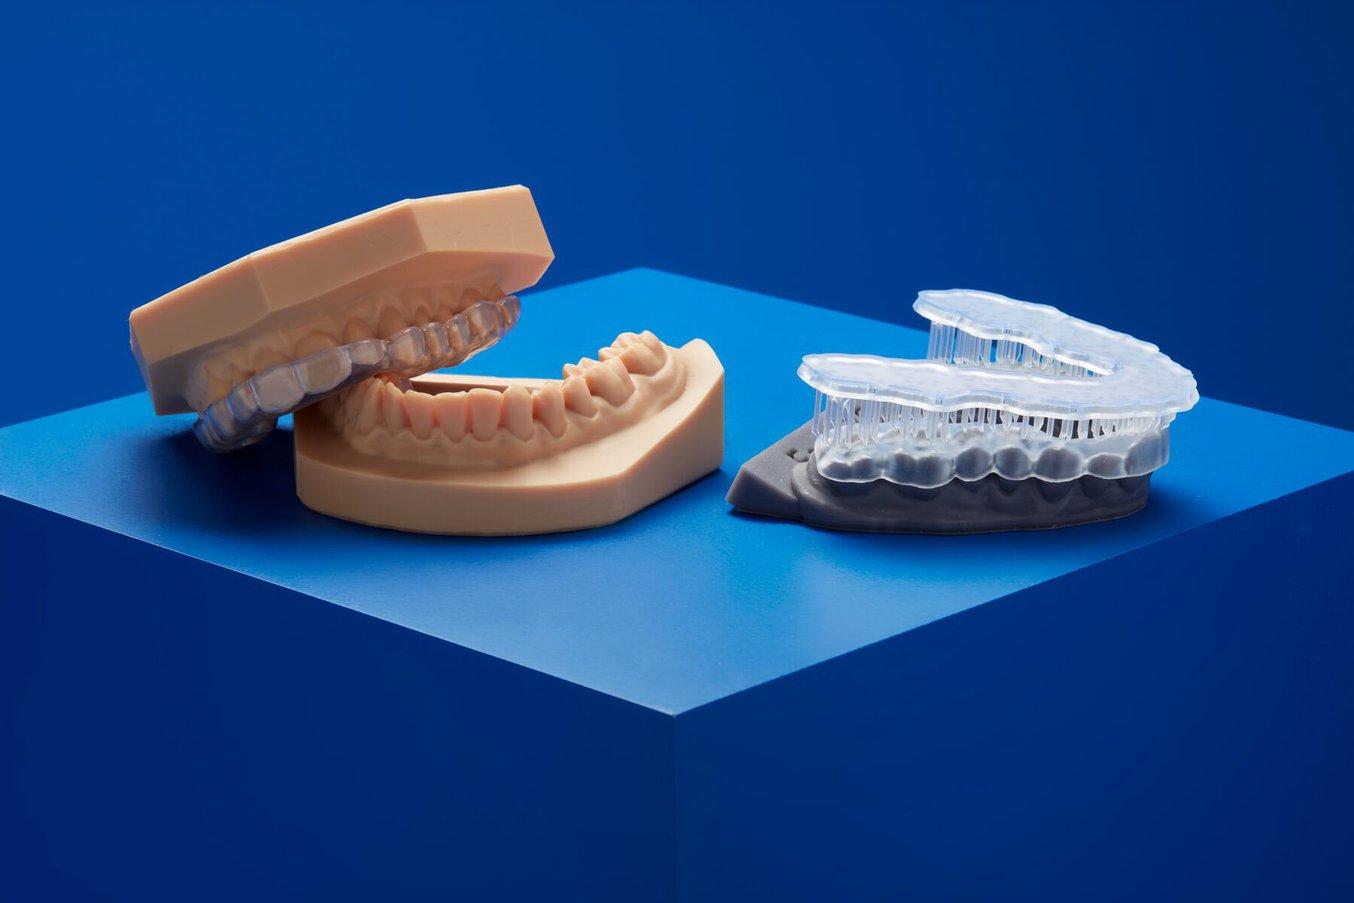 Two dental models 3D printed on Dental LT Clear Resin (V2) on a blue background